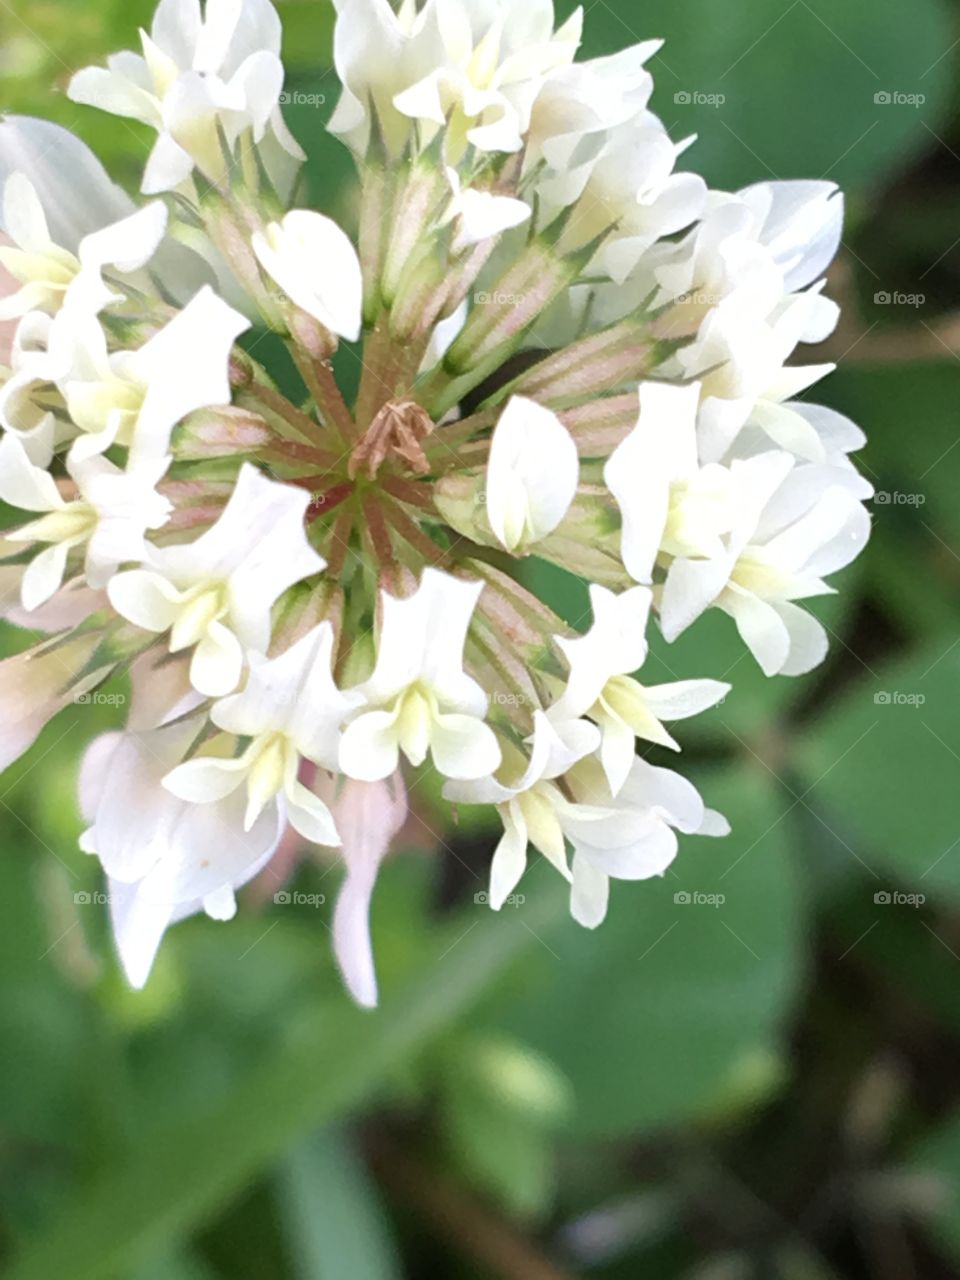 Clover flower closeup 